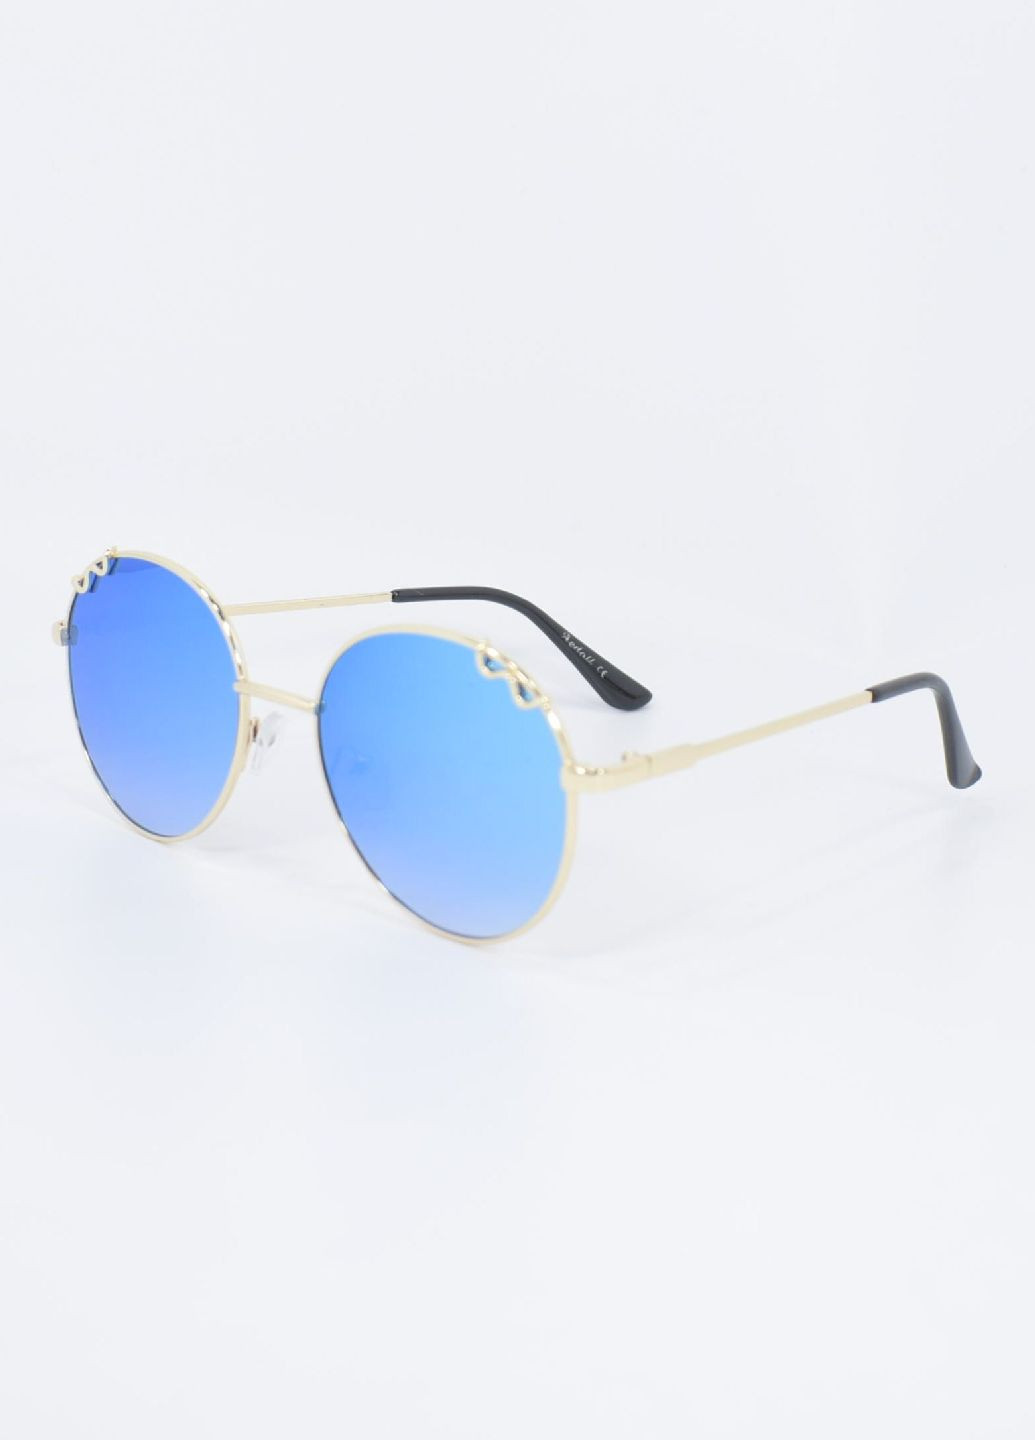 Солнцезащитные очки 100121 Merlini голубые